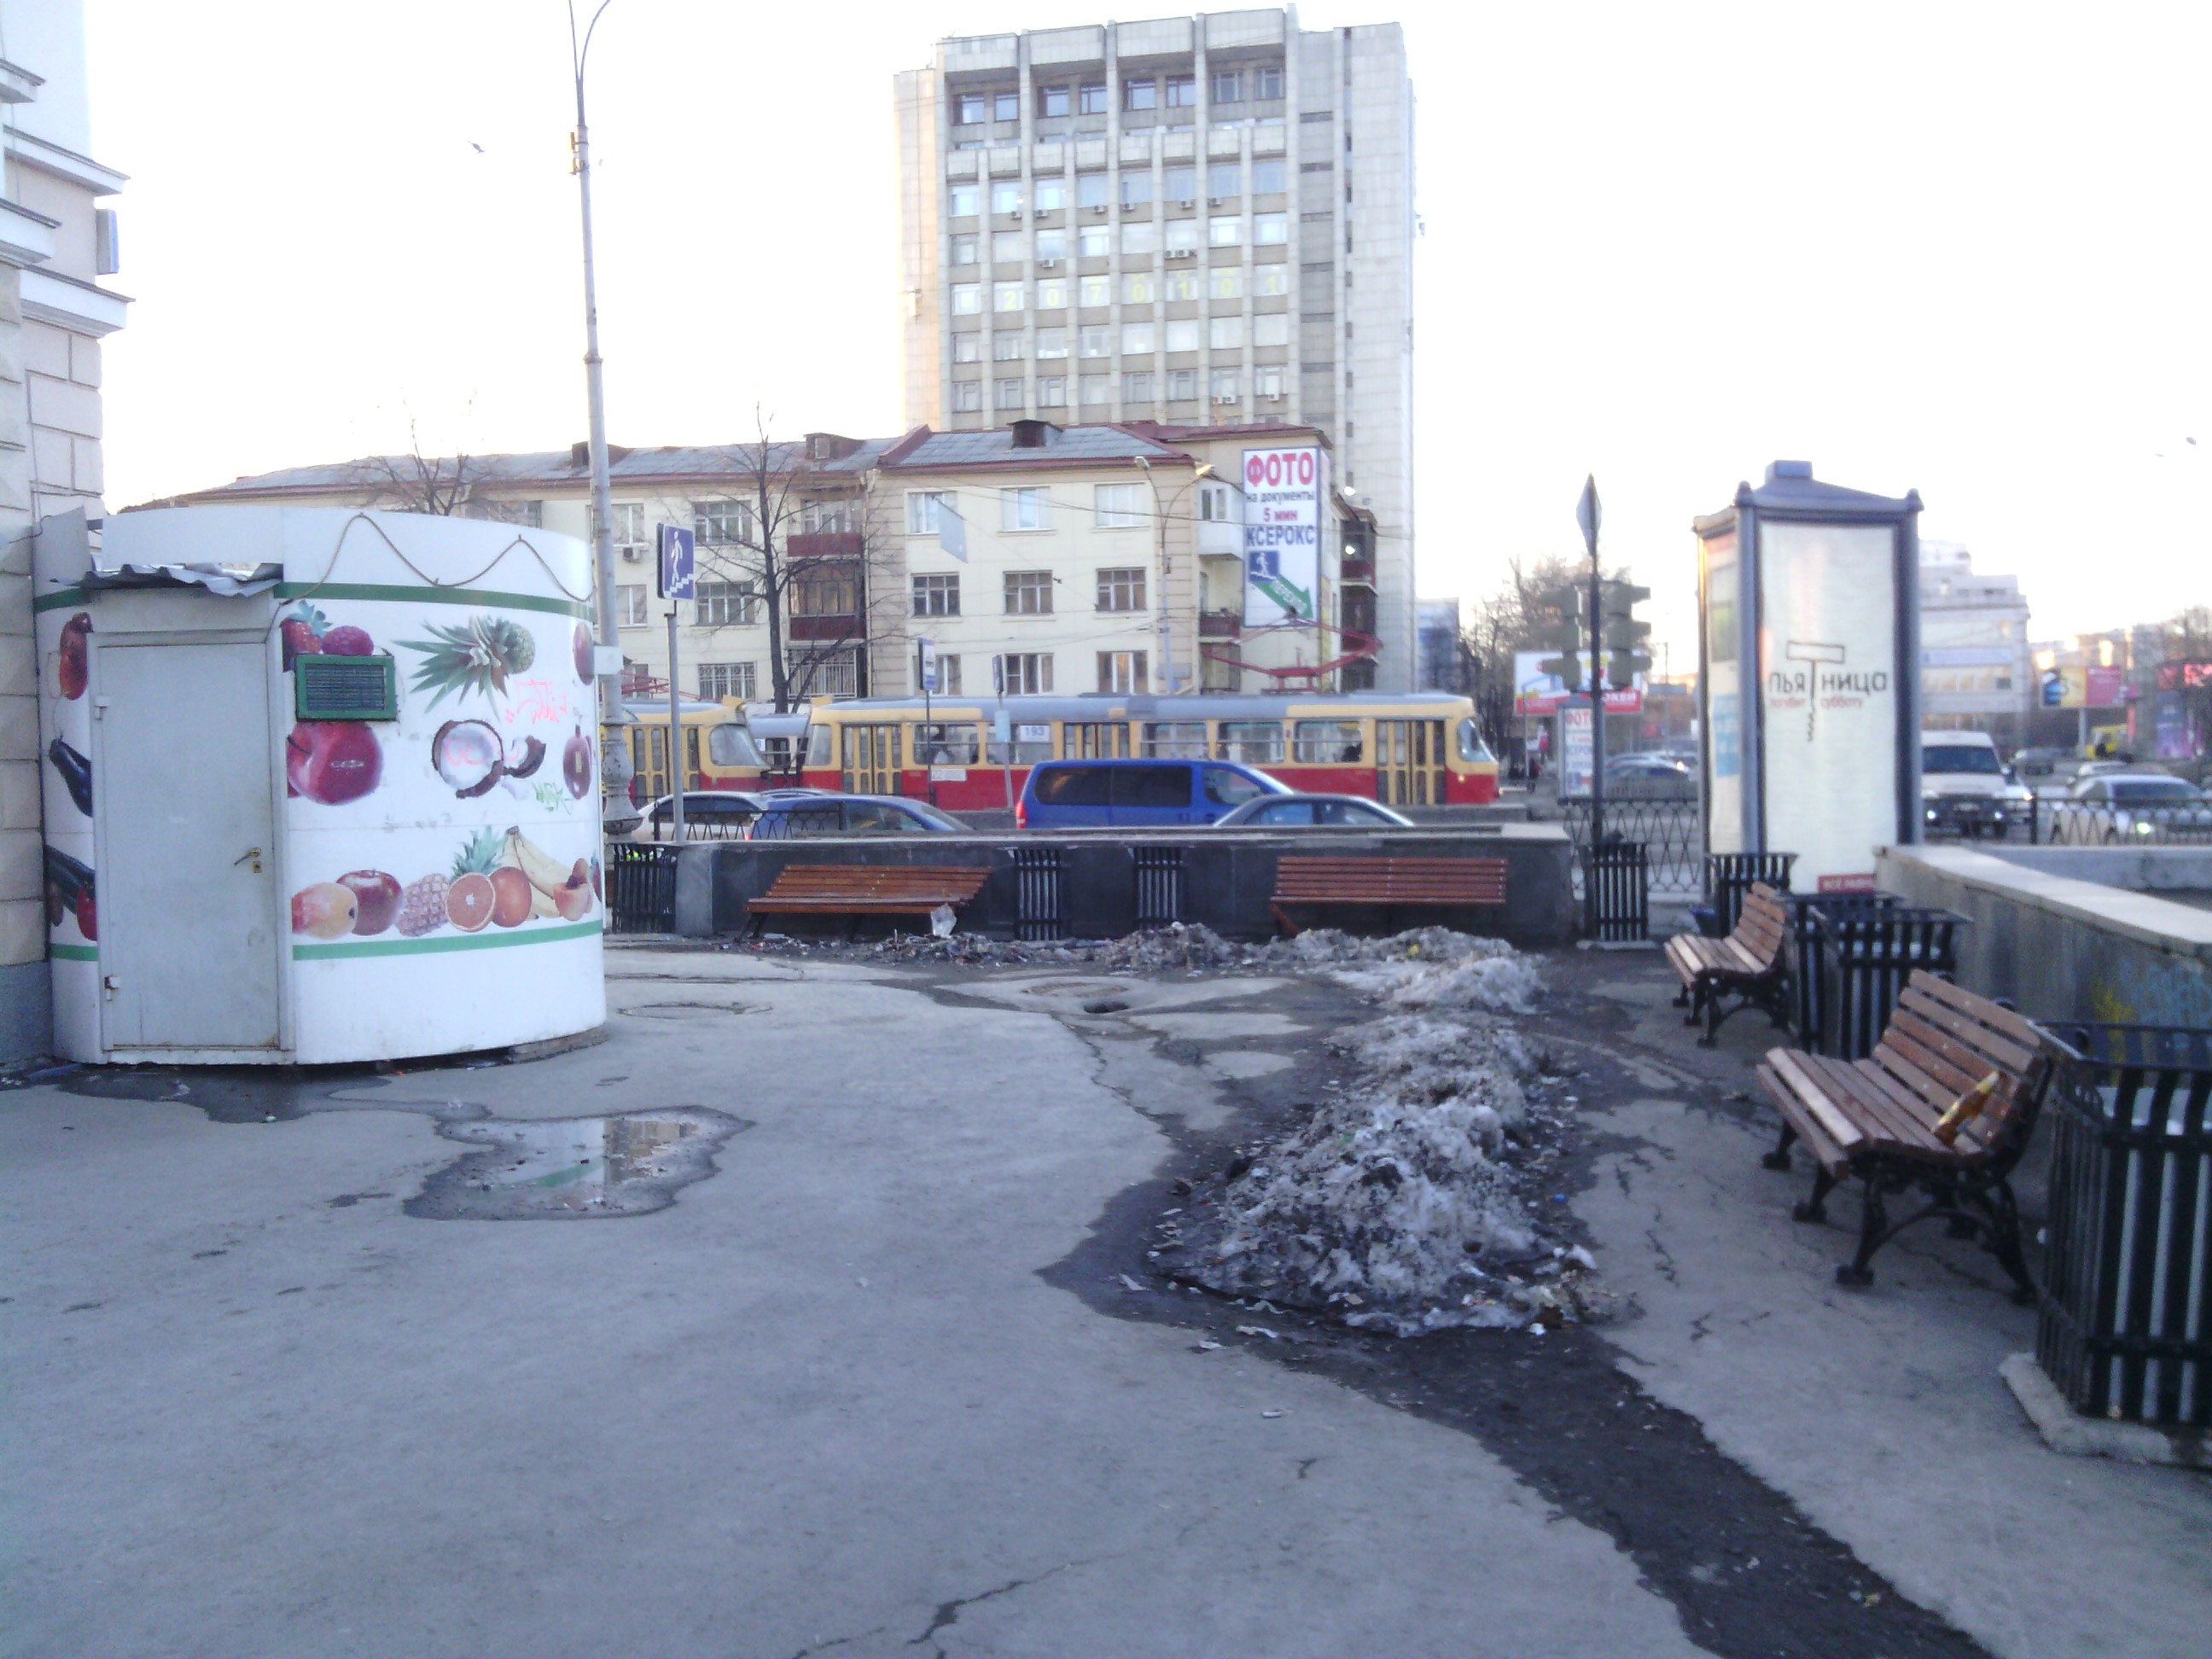 Отдых с видом на ларьки и ограждения. Неизвестные наводнили Екатеринбург скамейками и урнами - Фото 2